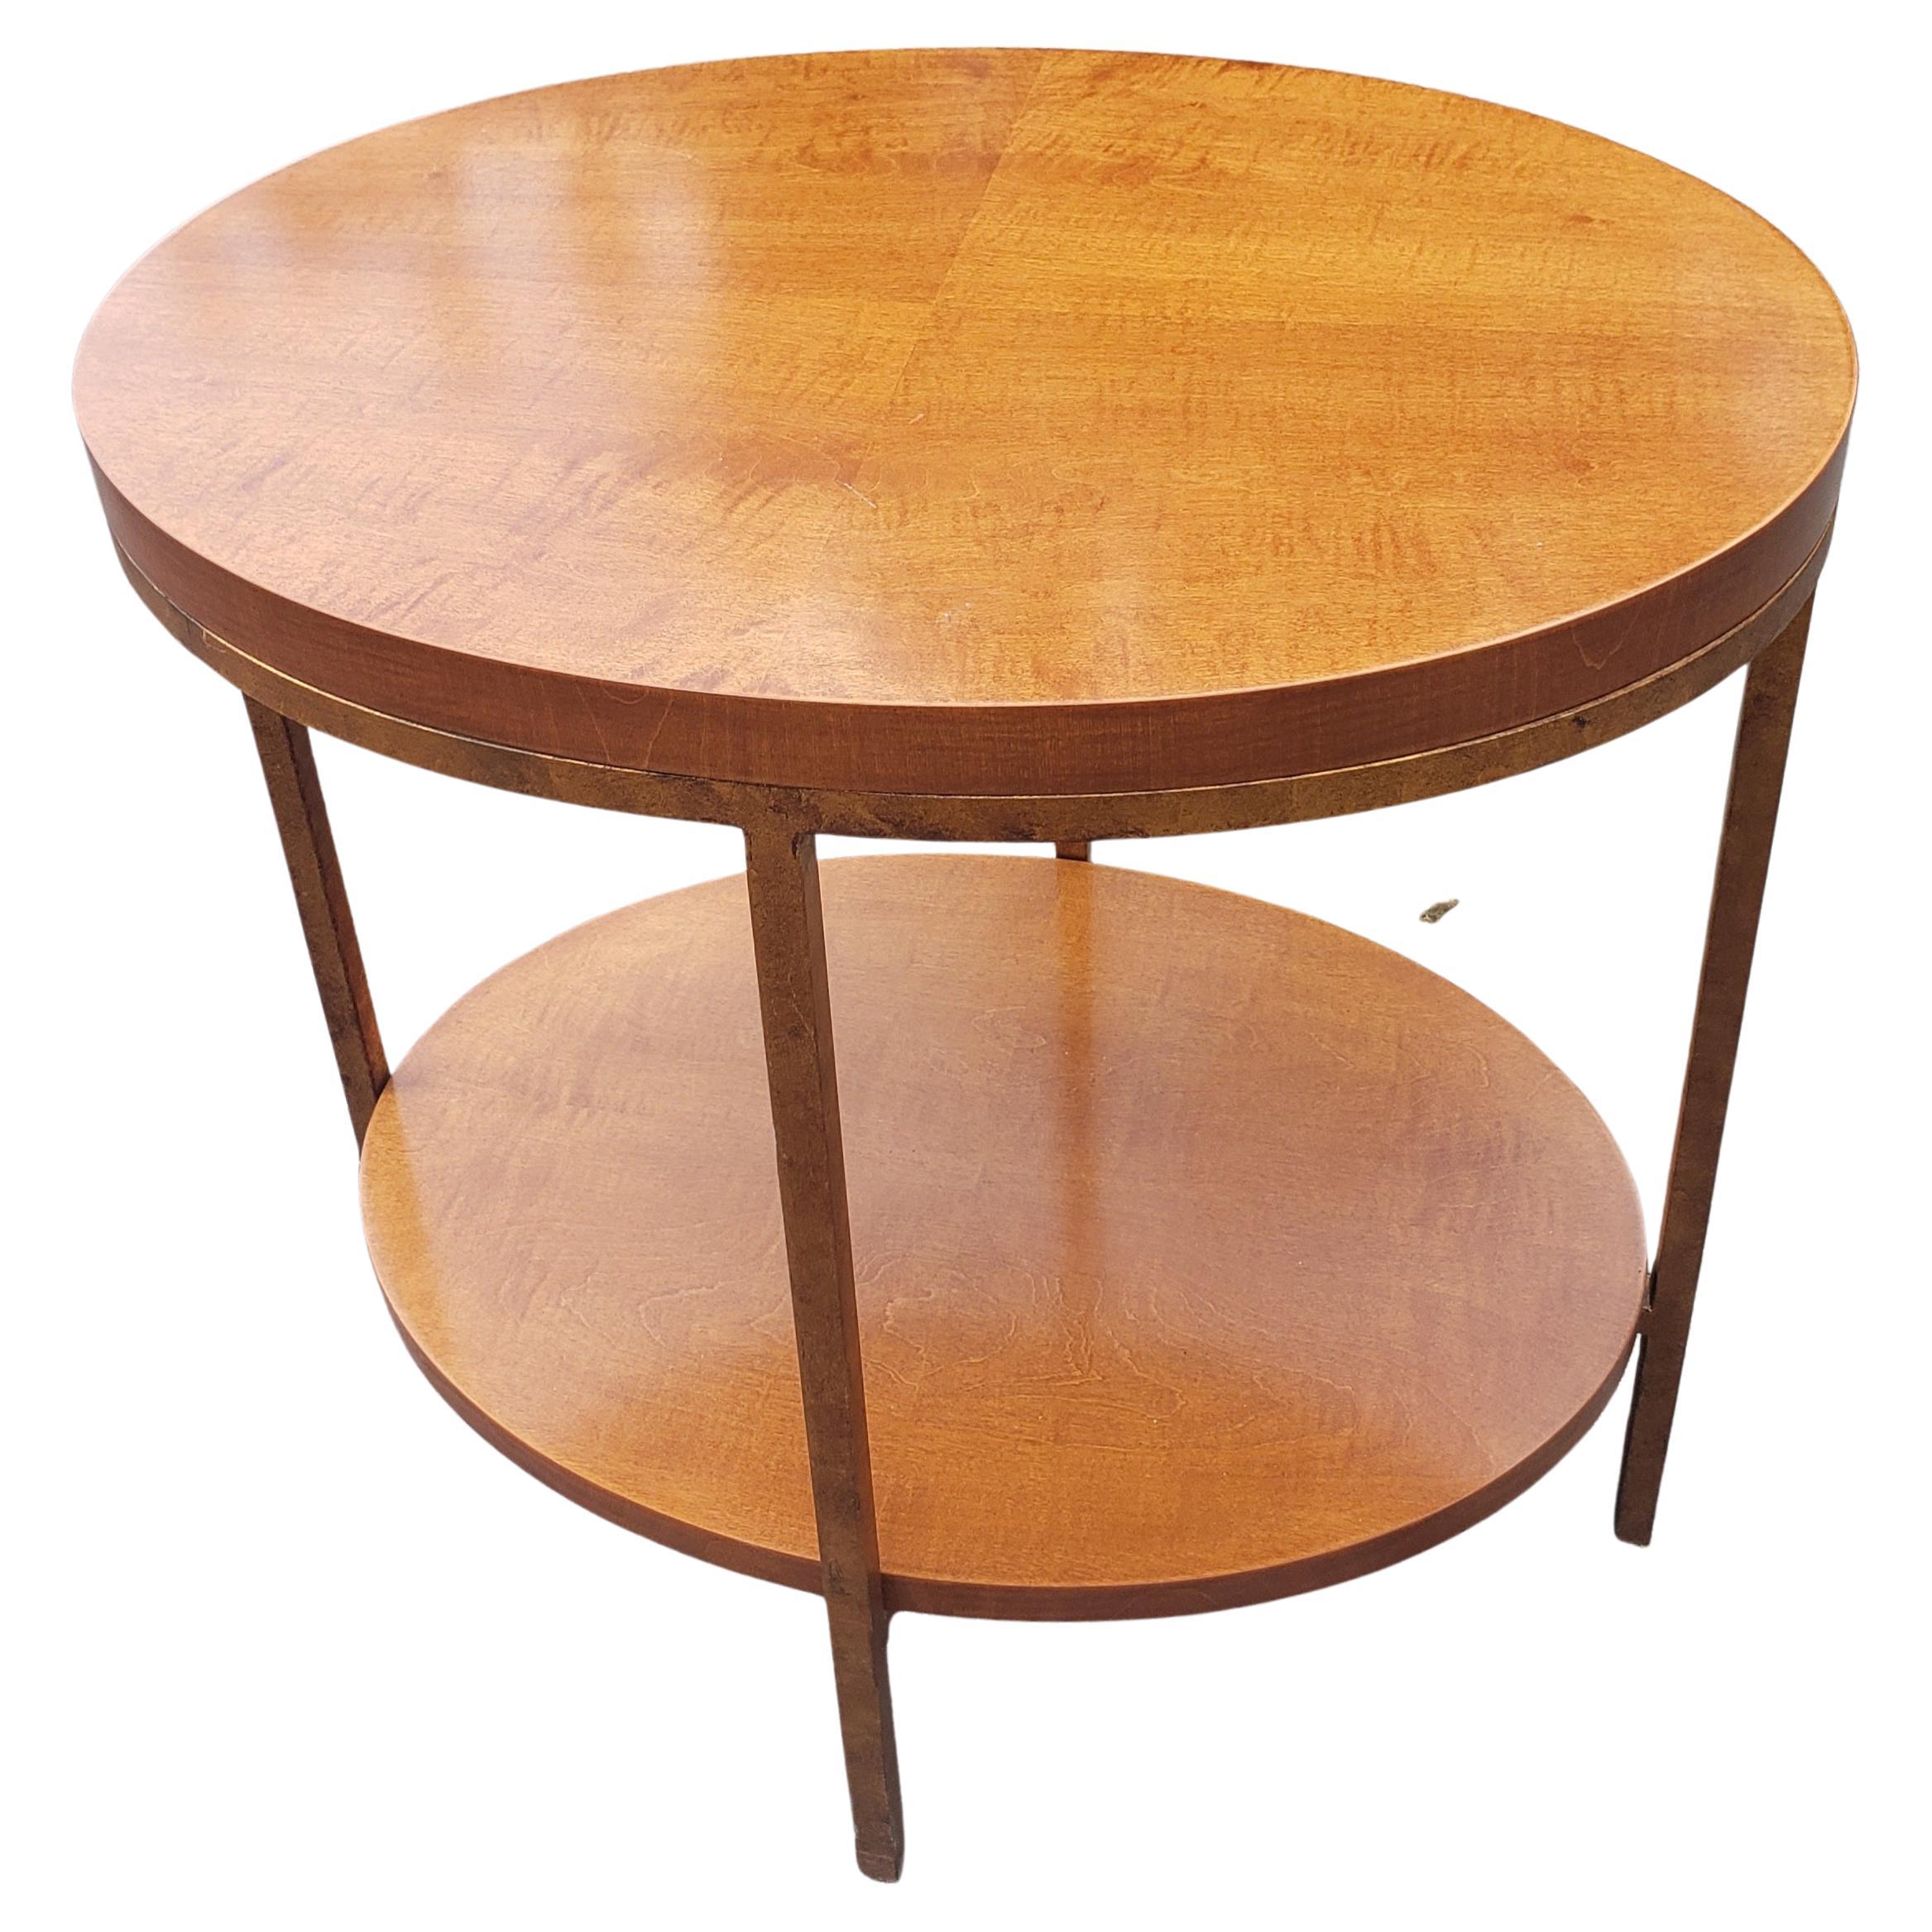 Une élégante table ovale contemporaine à deux niveaux de Baker Furniture en acajou primavera (acajou blond) et cadre en métal doré. La table est dotée d'une structure extrêmement lourde, robuste et superbe avec
Le grain de bois du livre.